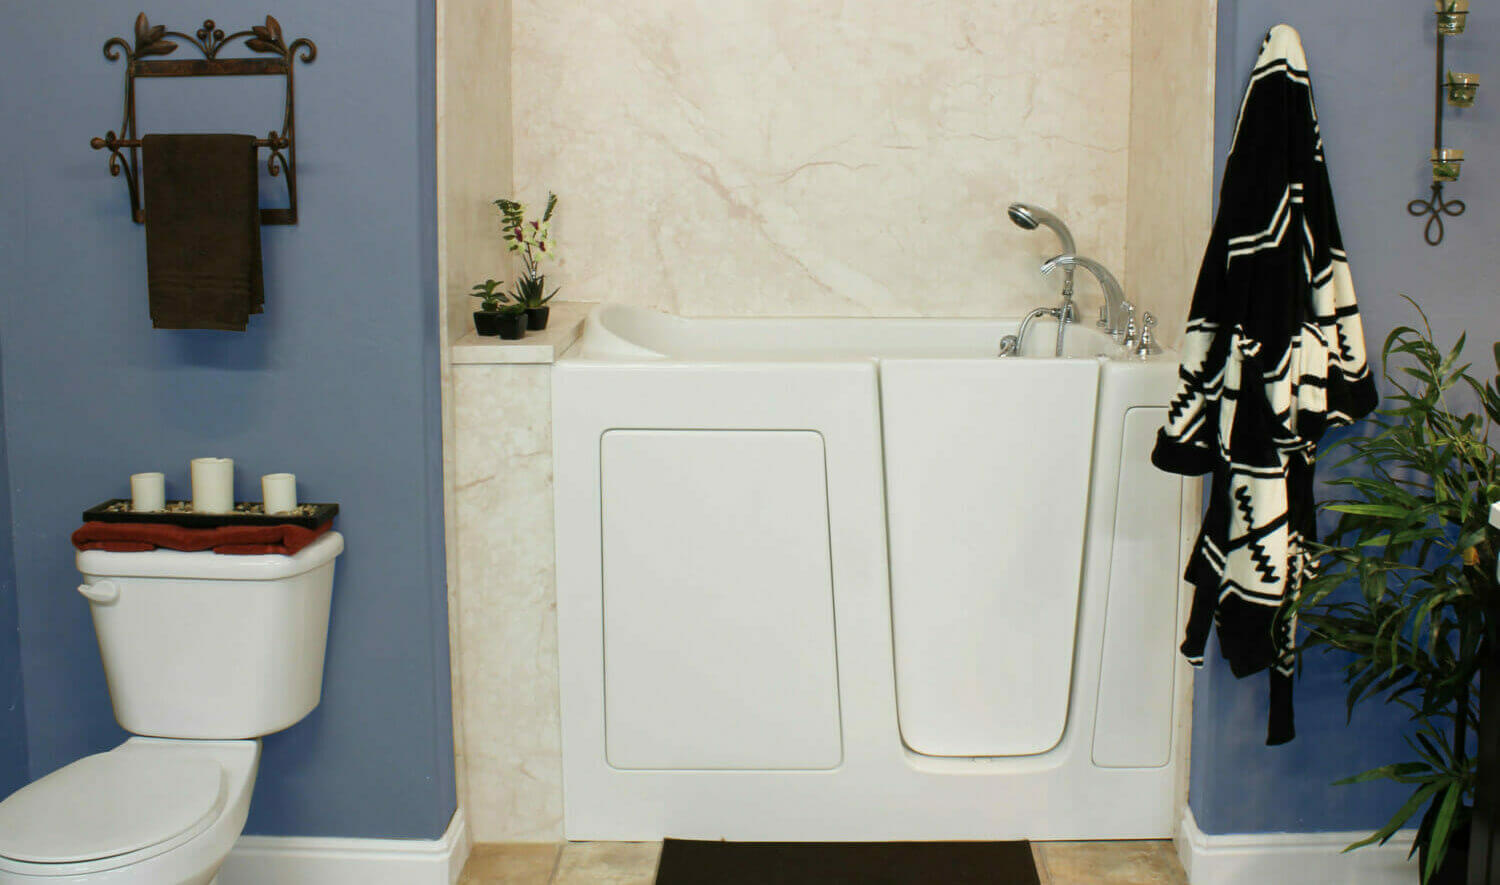 Five Star Bath Solutions of Arlington Walk-in Bathtub Installation